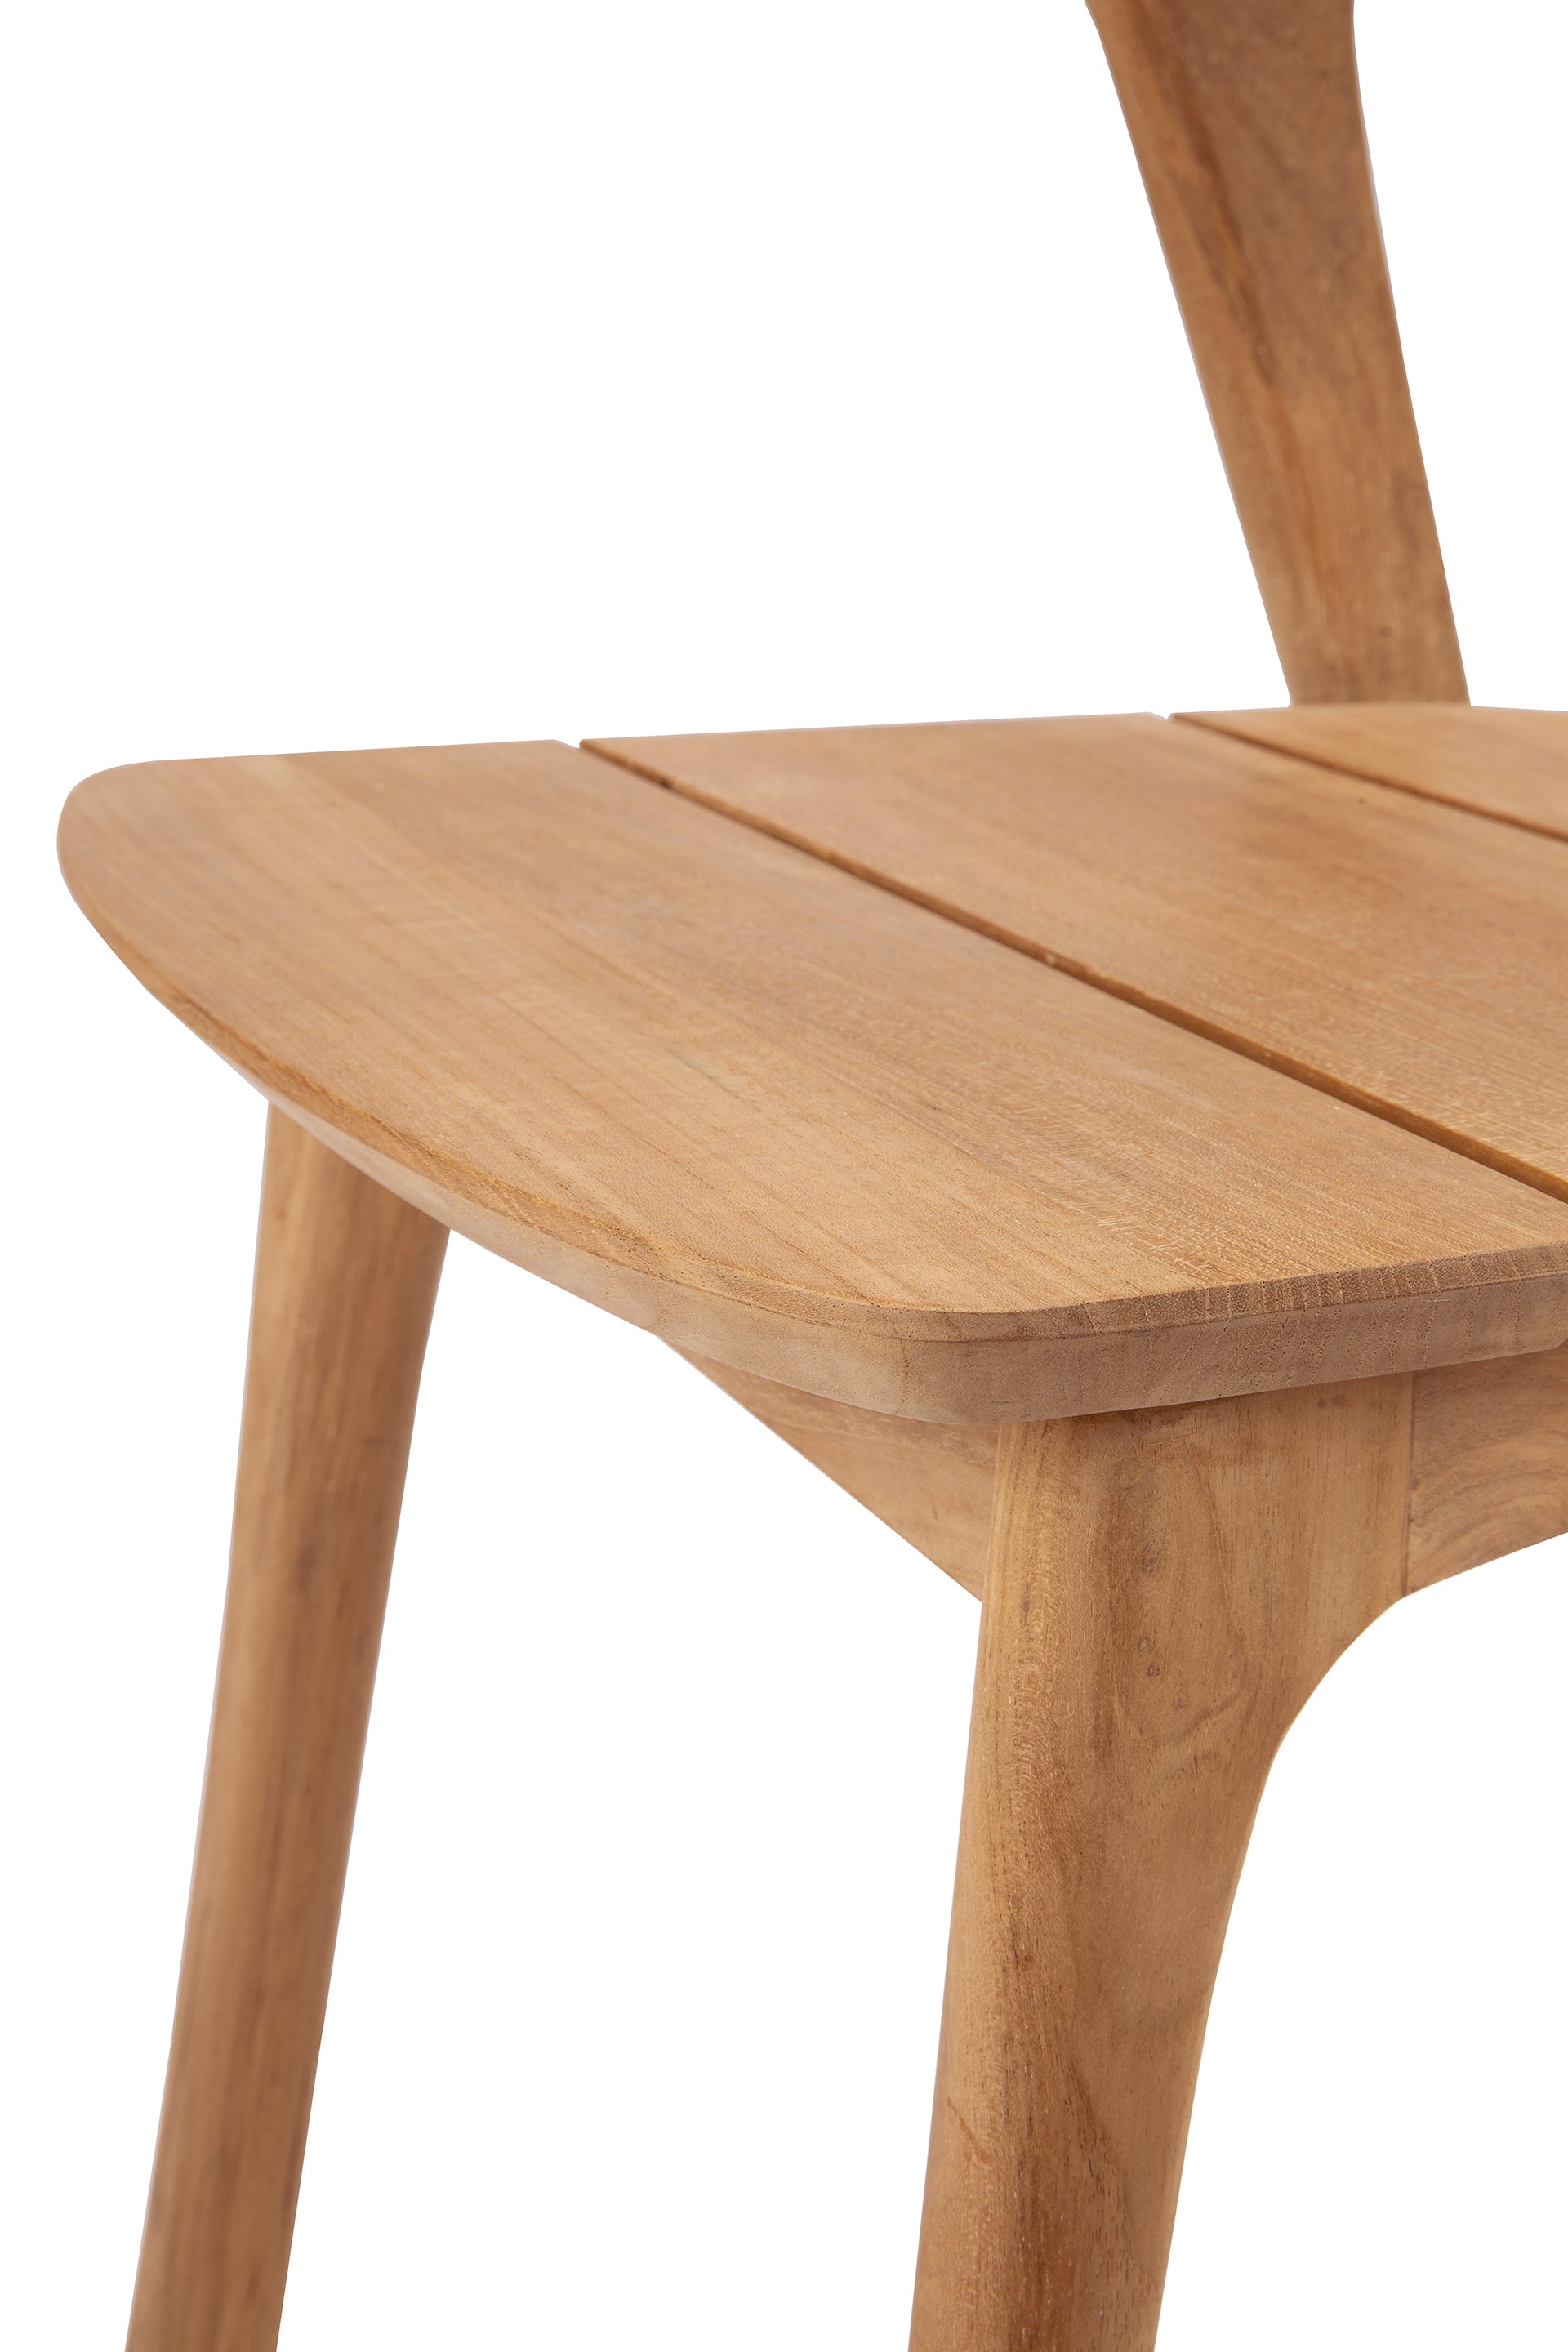 比利時原裝進口實木傢俬 - 戶外系列 - Bok系列柚木餐椅